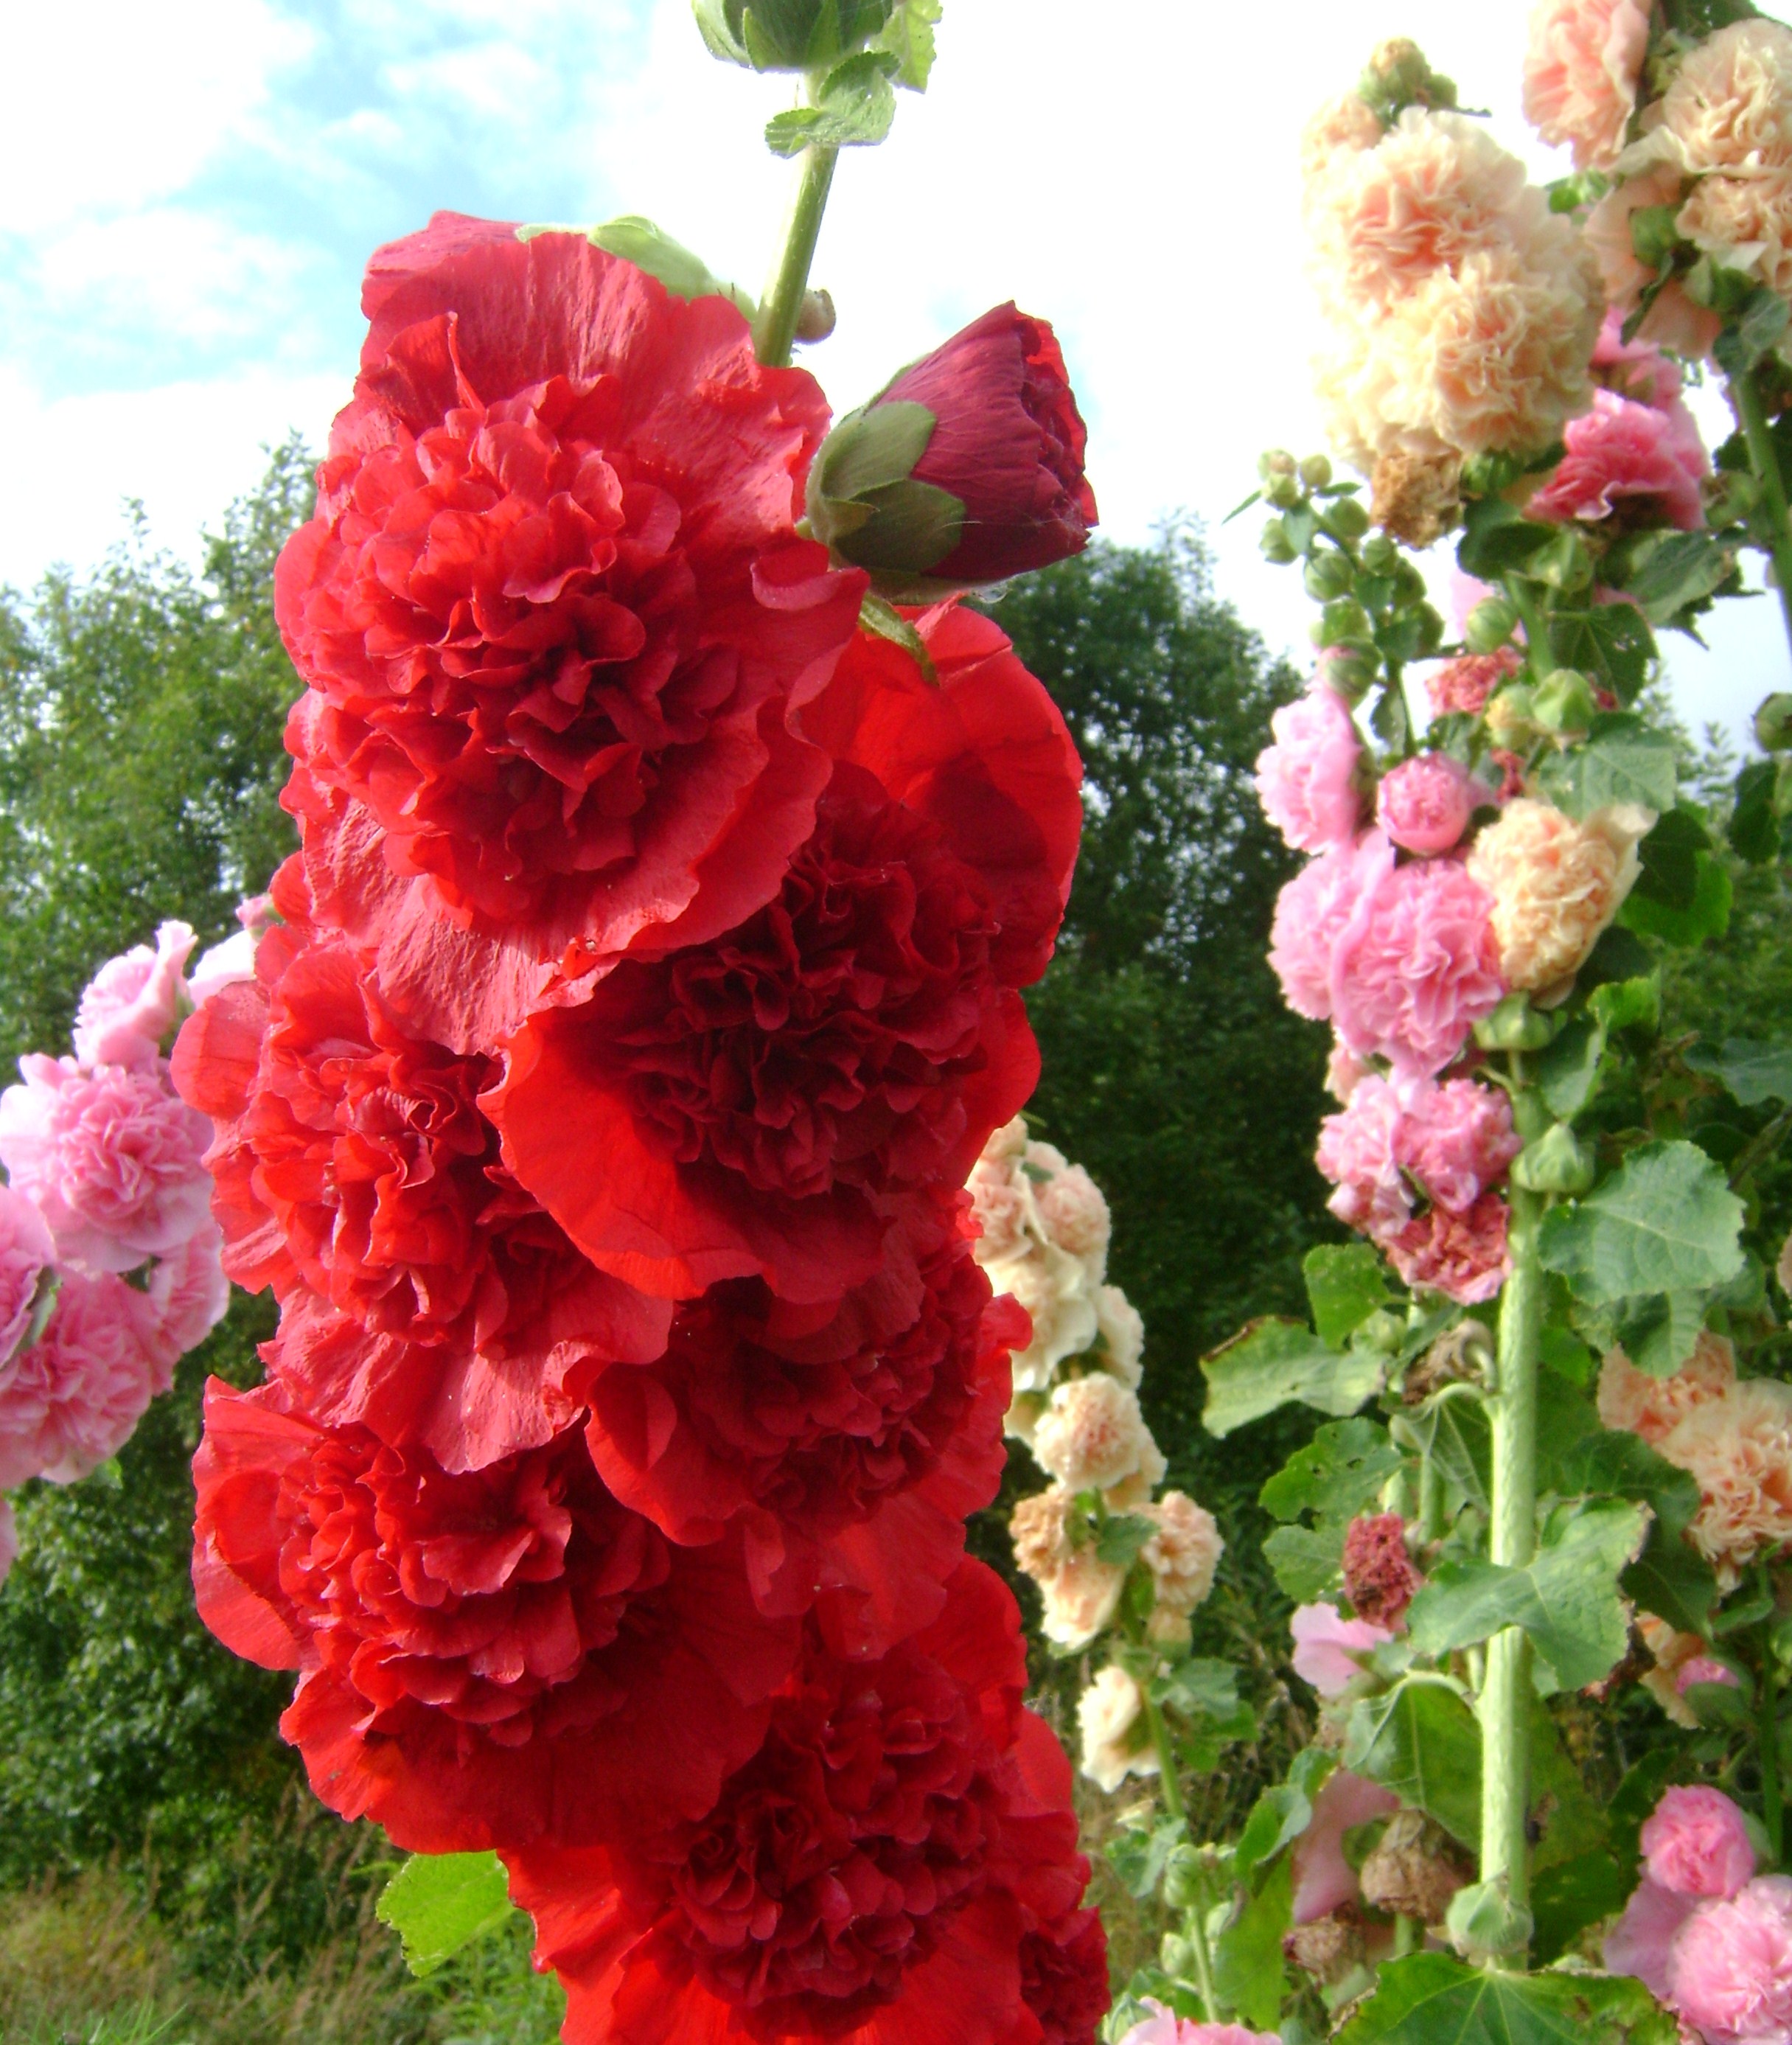 Шток-роза: посадка, уход и фото в открытом грунте, сочетание в ландшафтном дизайне, размножение и выращивание сорта